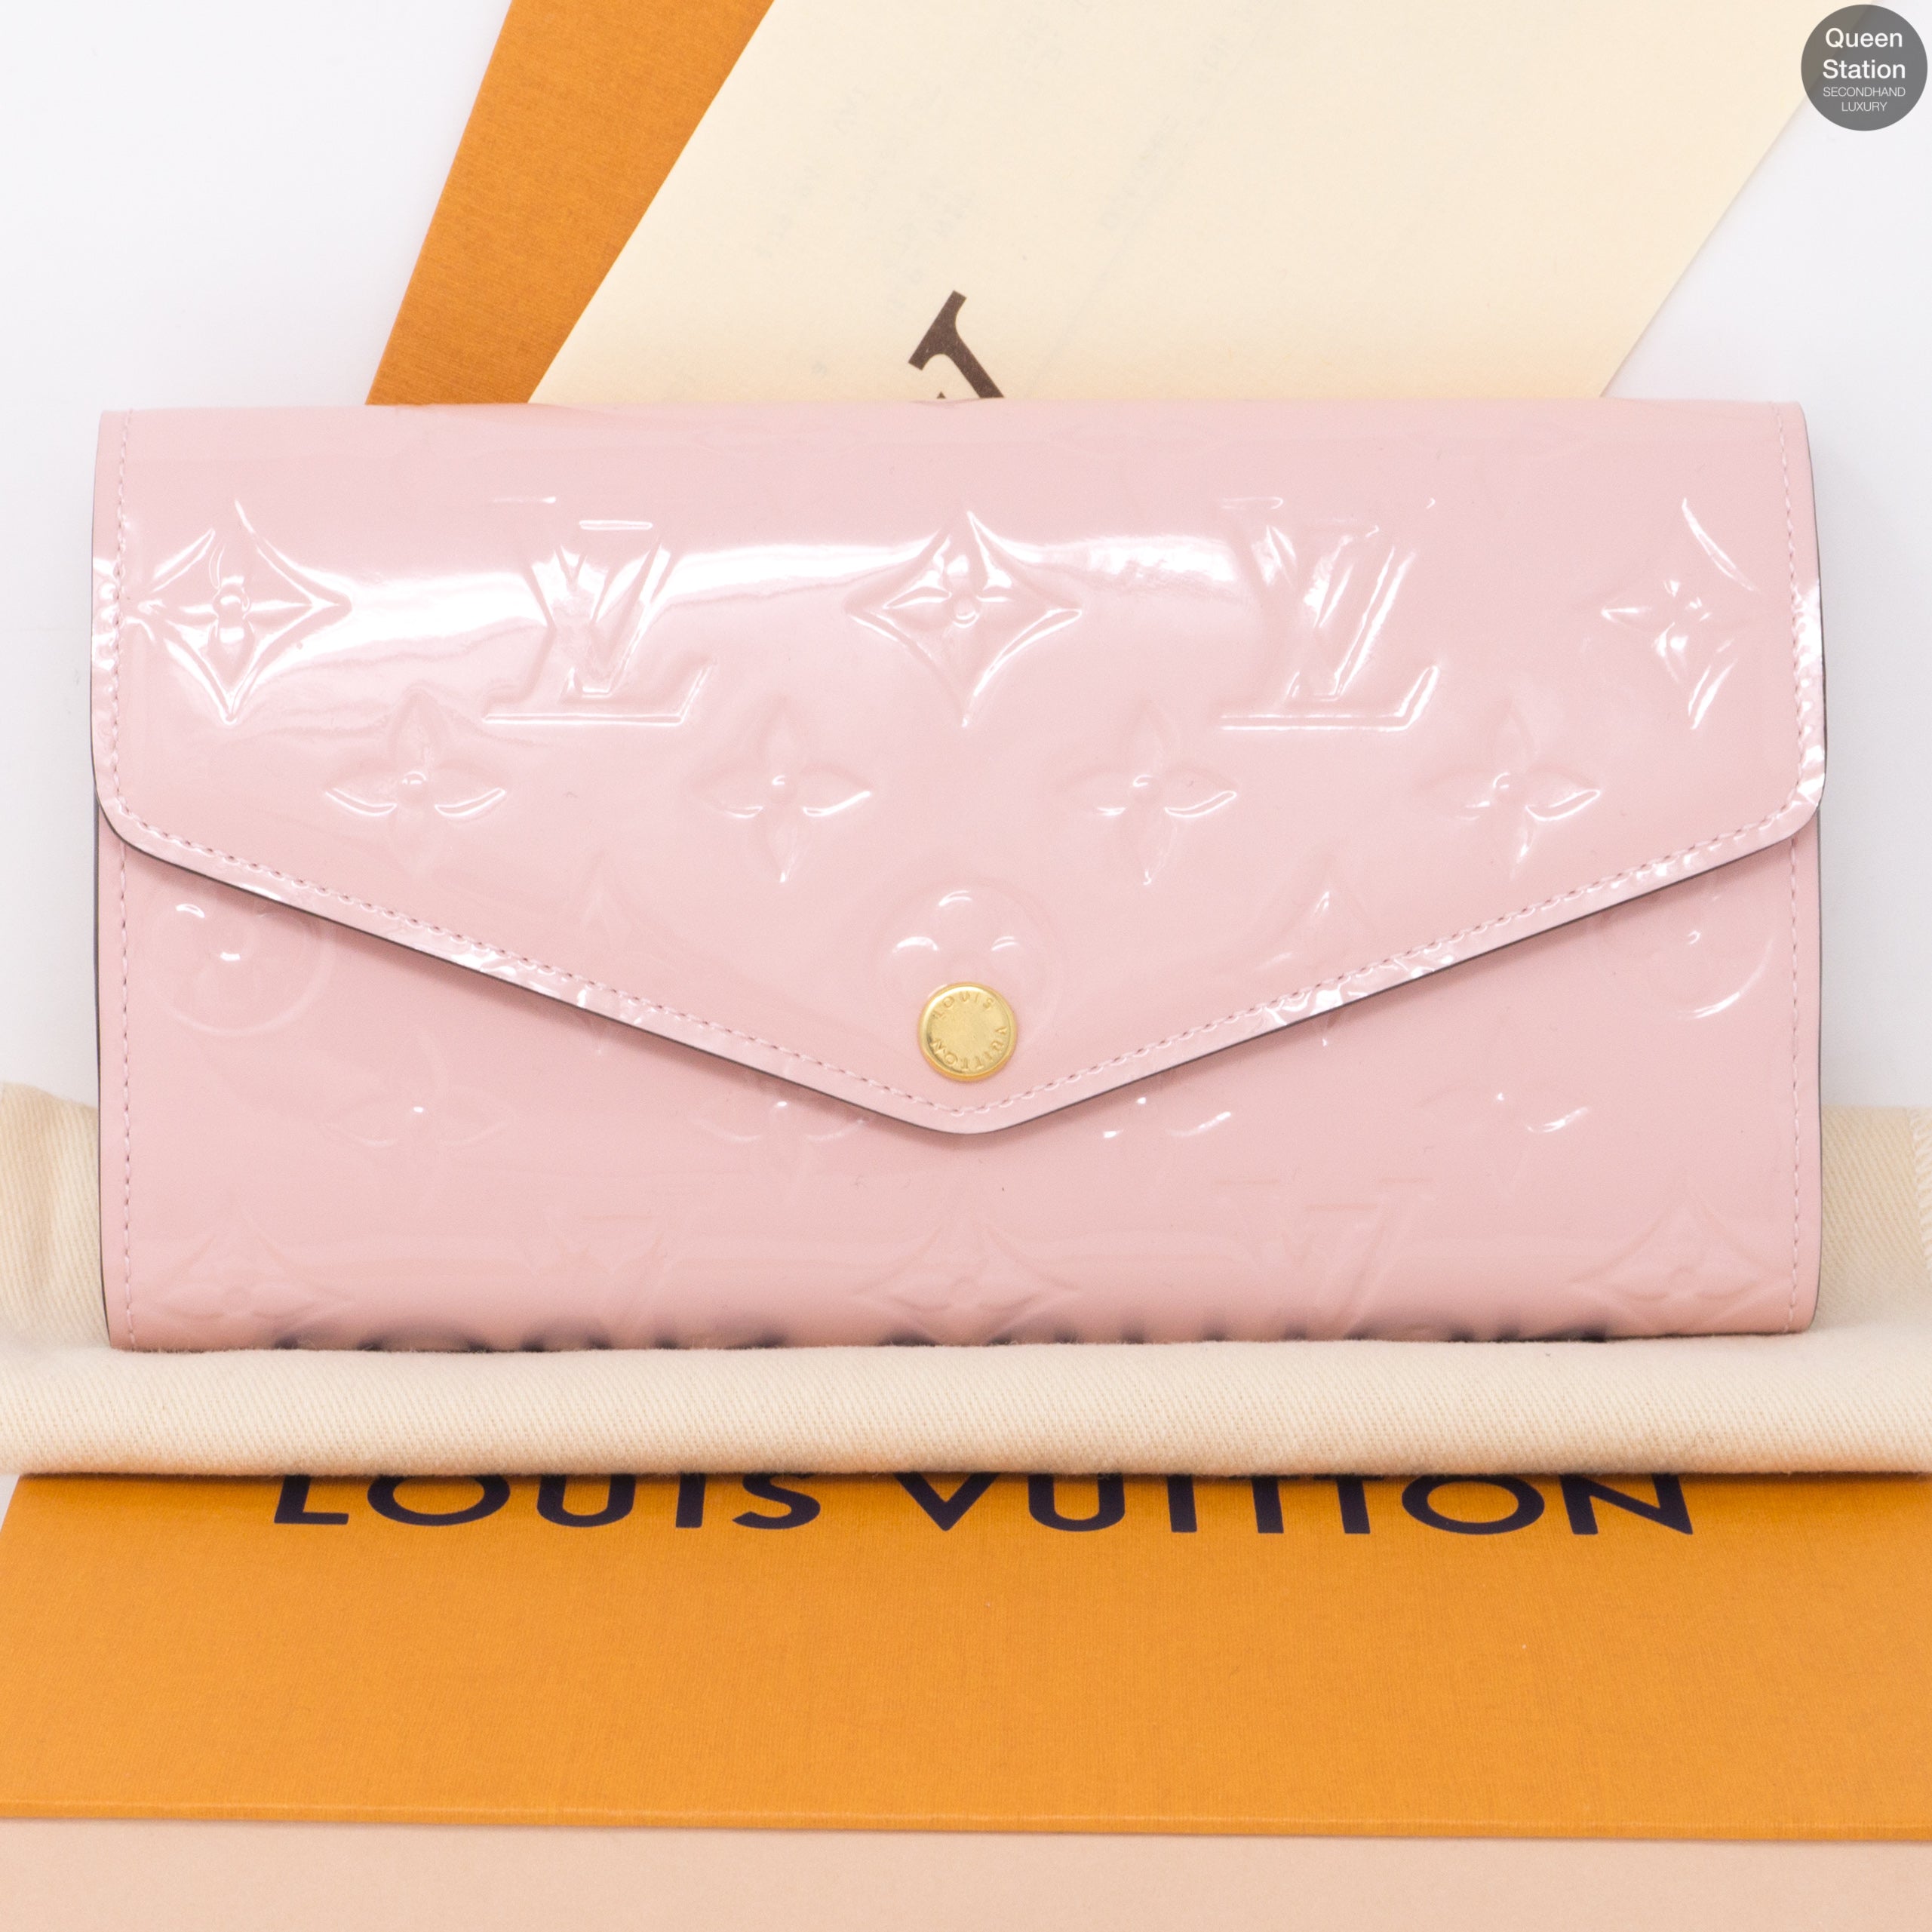 Shop Louis Vuitton PORTEFEUILLE SARAH 2020-21FW Sarah wallet (M62234,  M60531, M62235, M62236) by Materialgirl